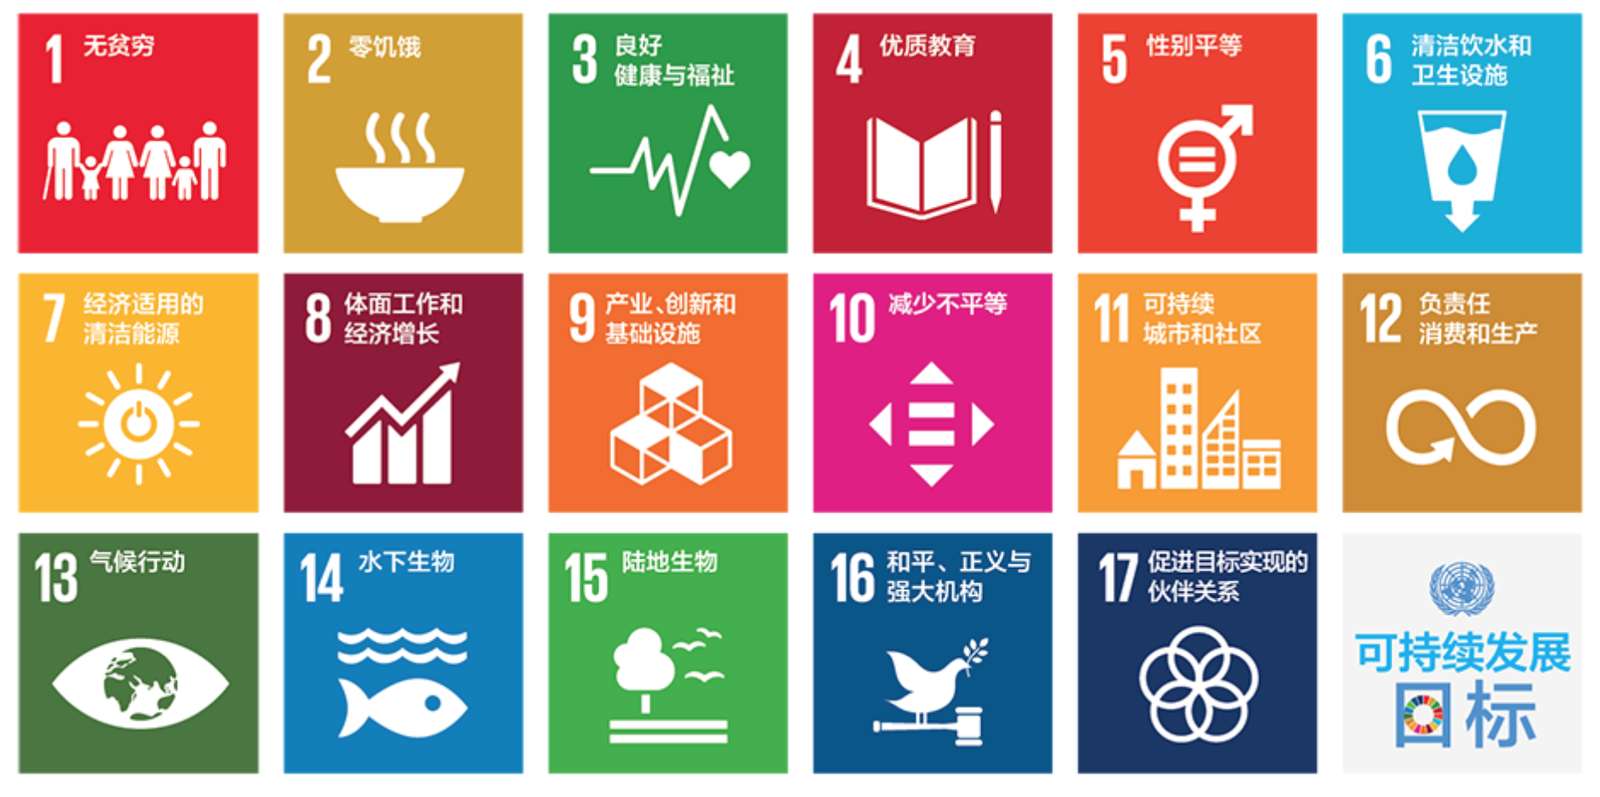 SDG-Rätsel Online-Puzzle